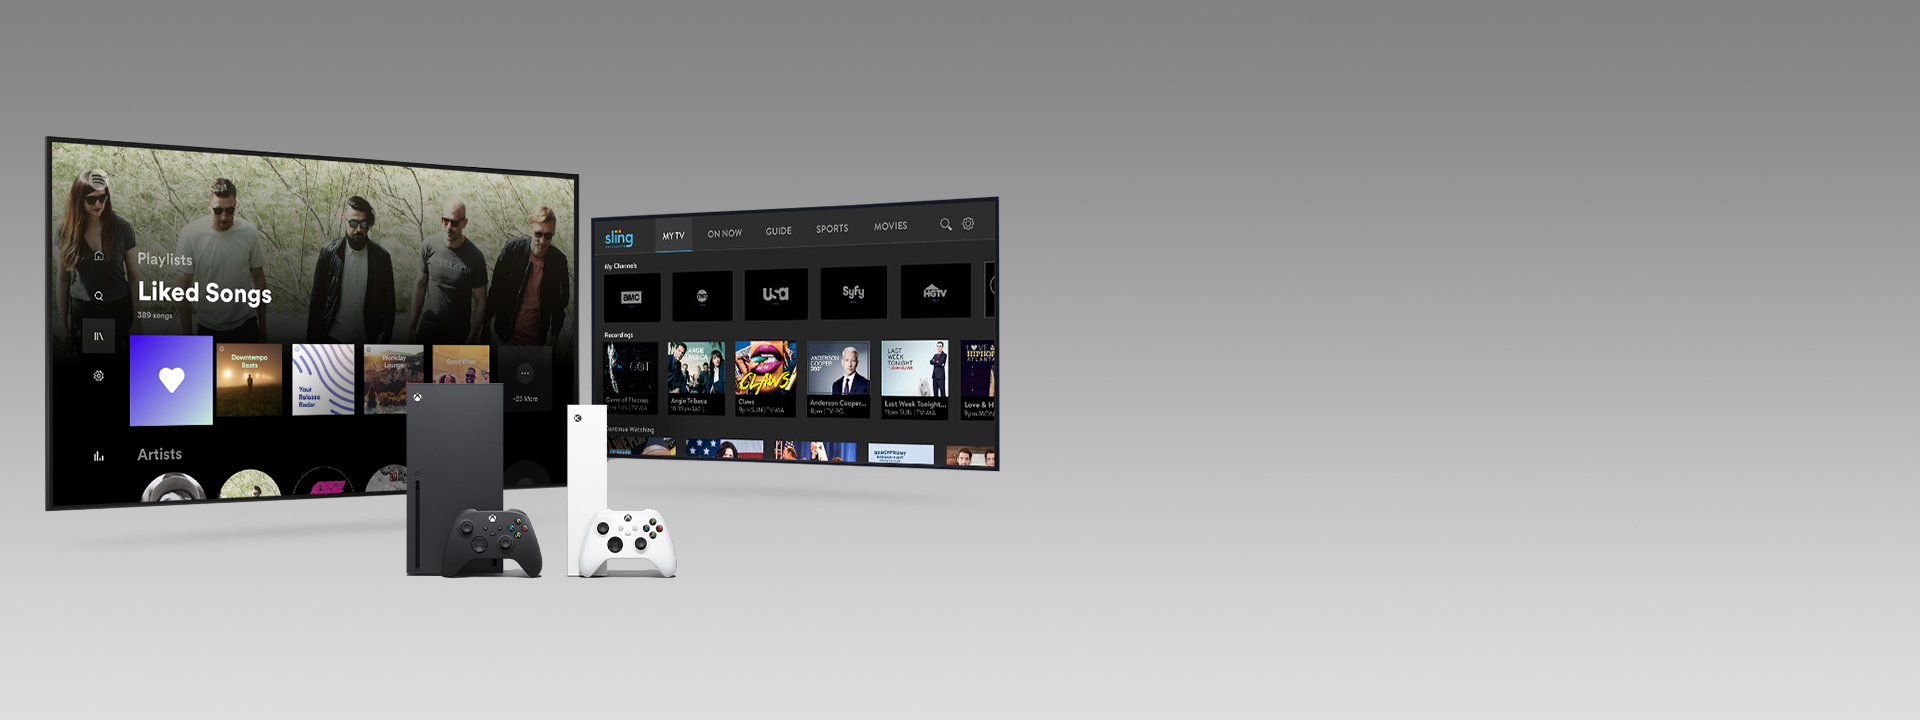 Xbox Series X i Series S z kontrolerami przed dwoma ekranami telewizyjnymi z interfejsami użytkownika aplikacji.